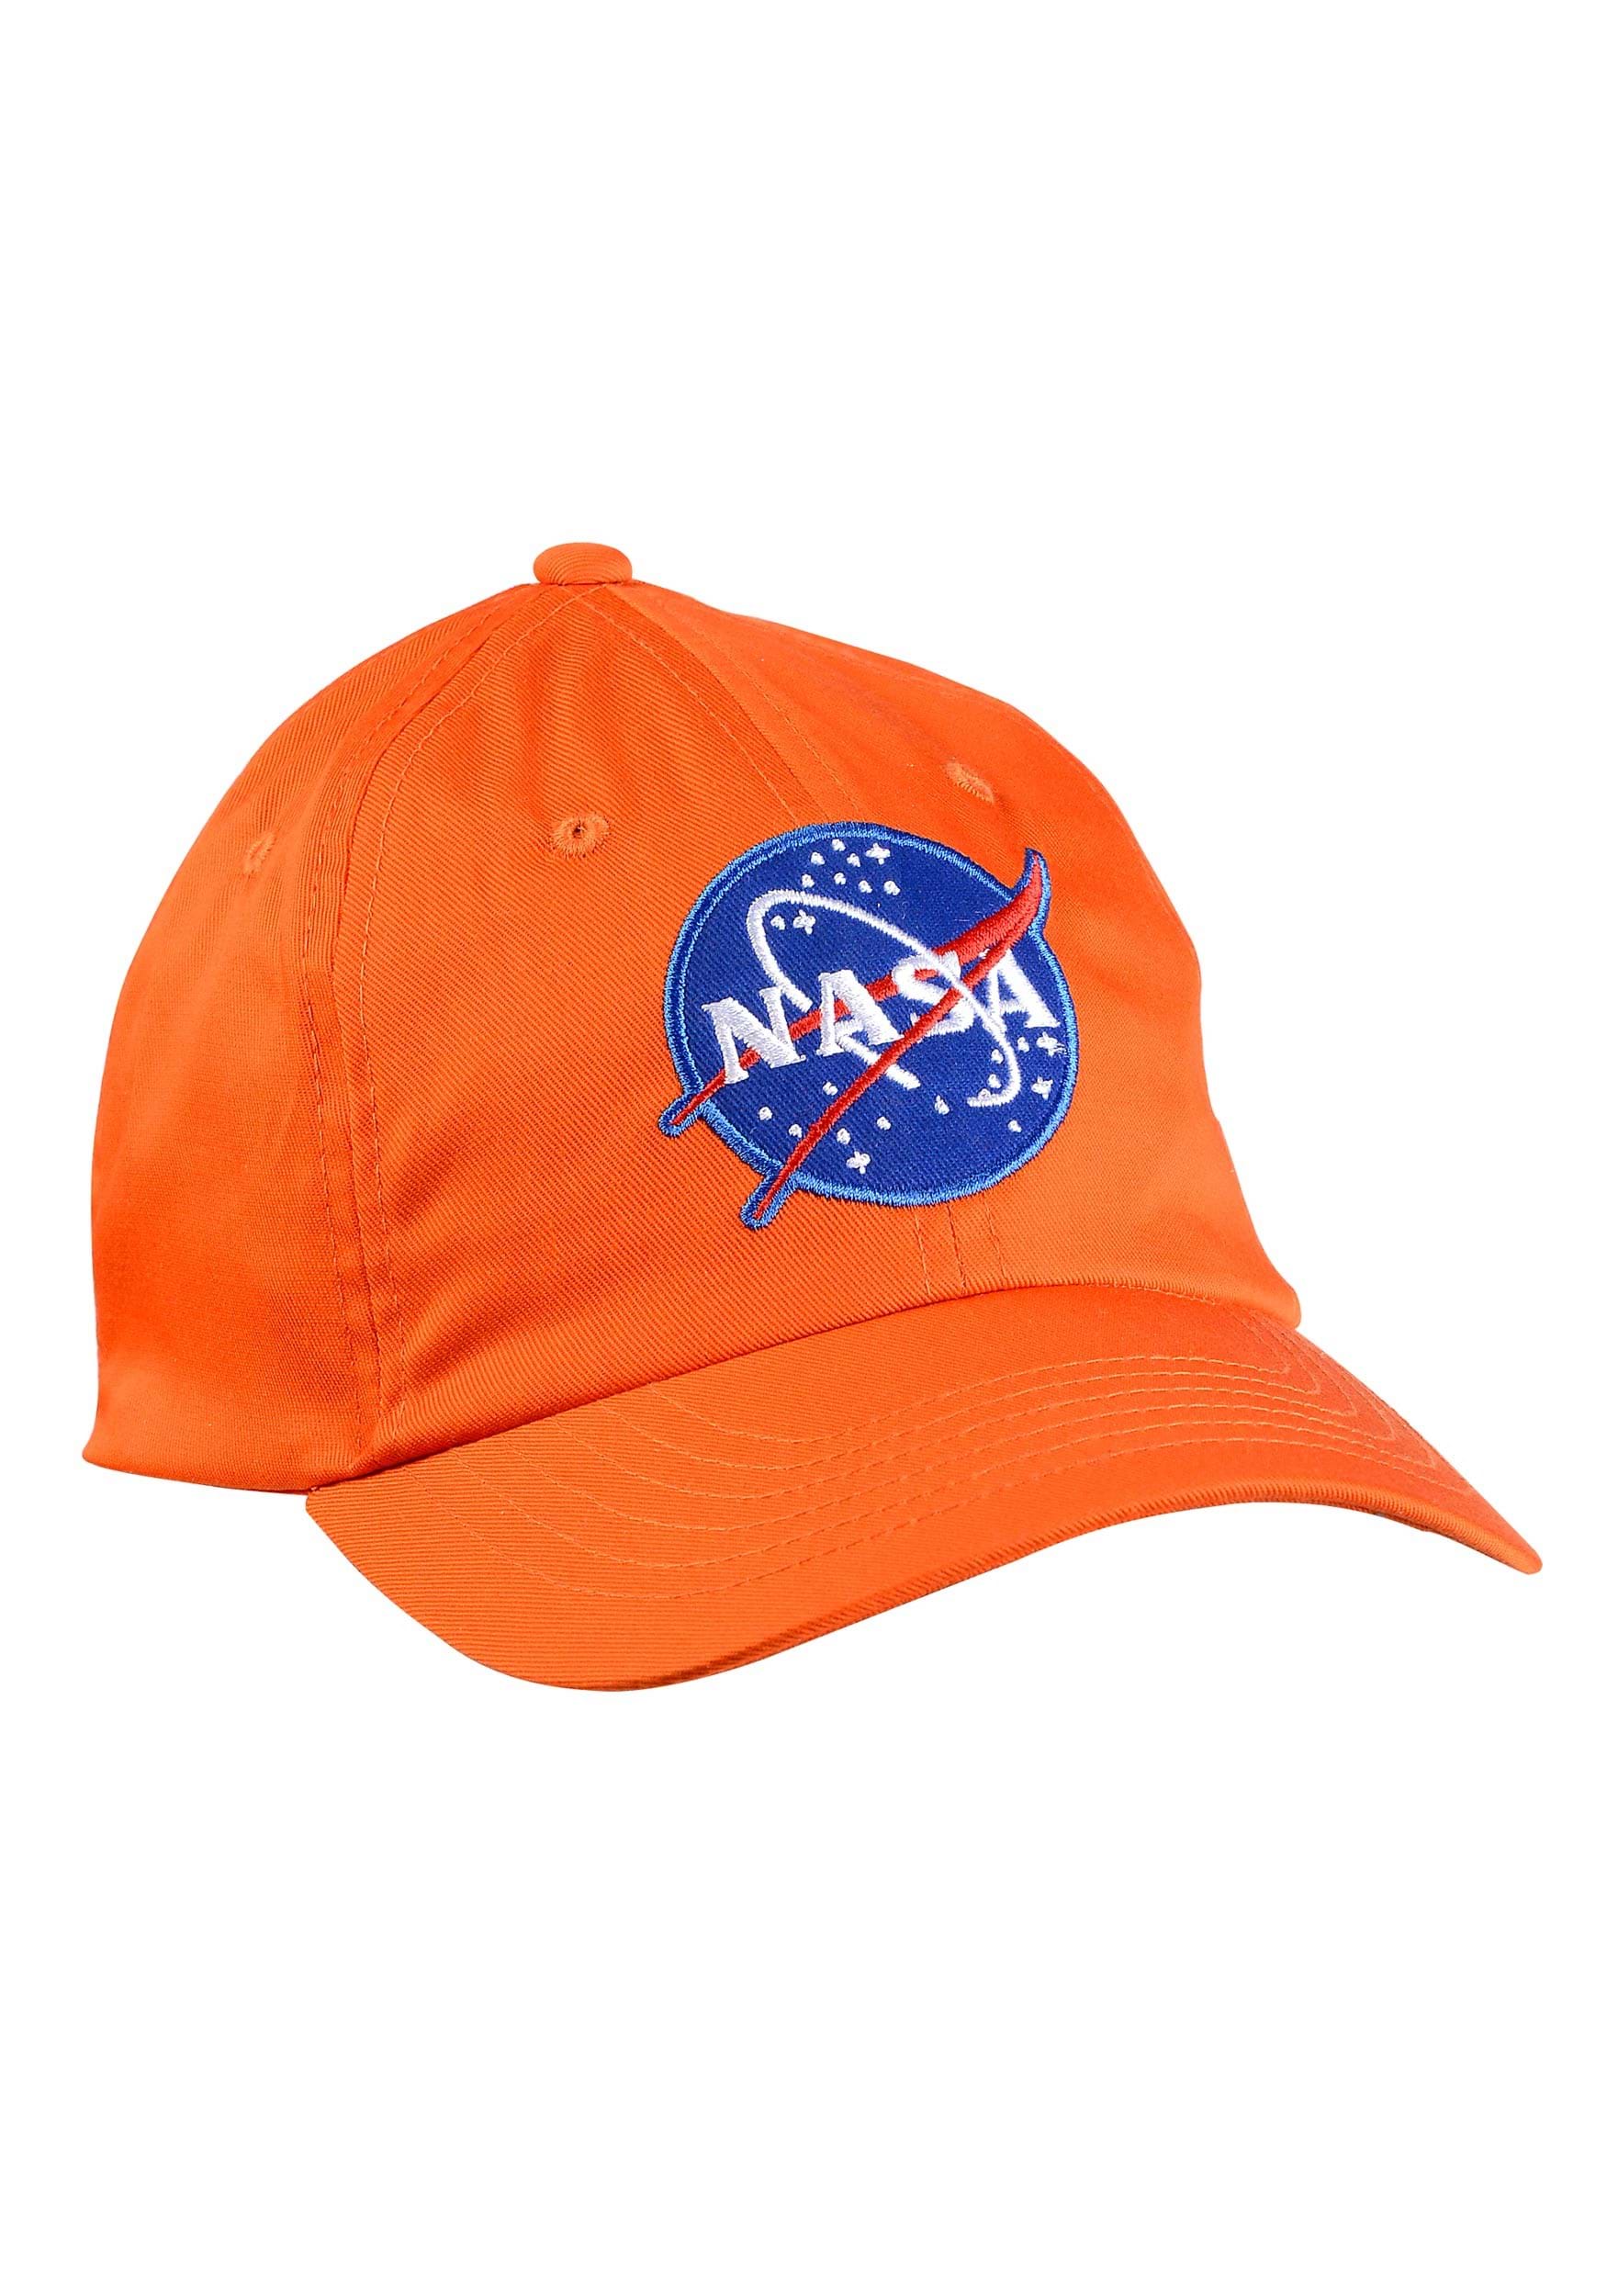 Kid’s Orange Astronaut Cap